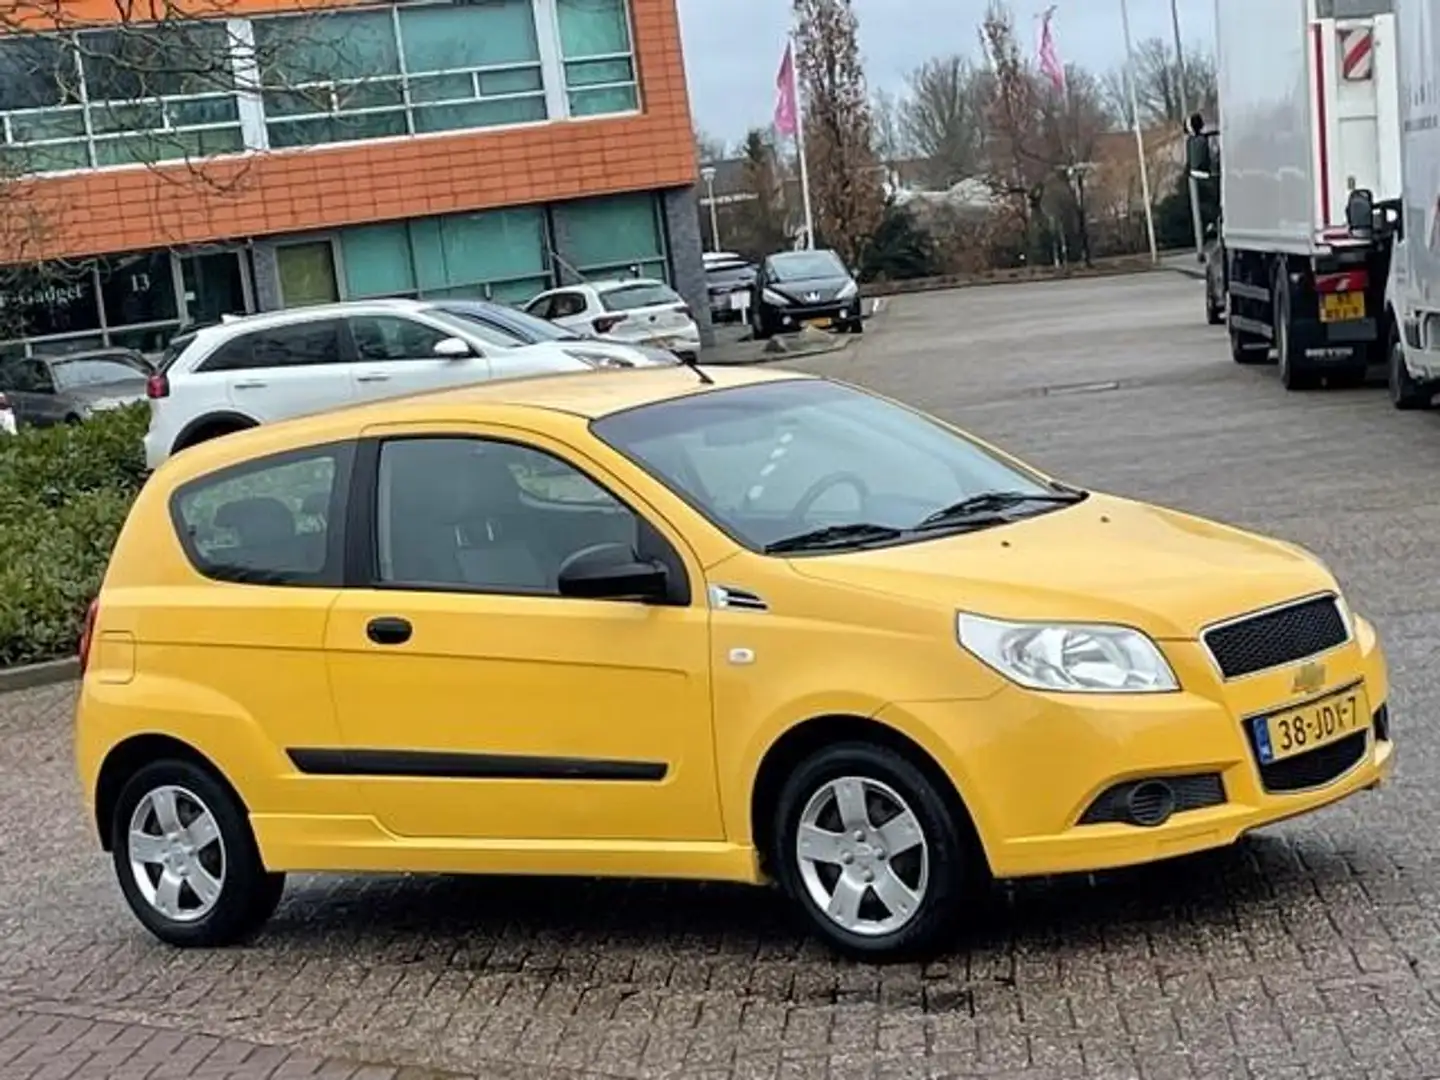 Chevrolet Aveo 1.2 16V L,bj.2009, kleur:geel,APK tot 02/2025 en N Geel - 2